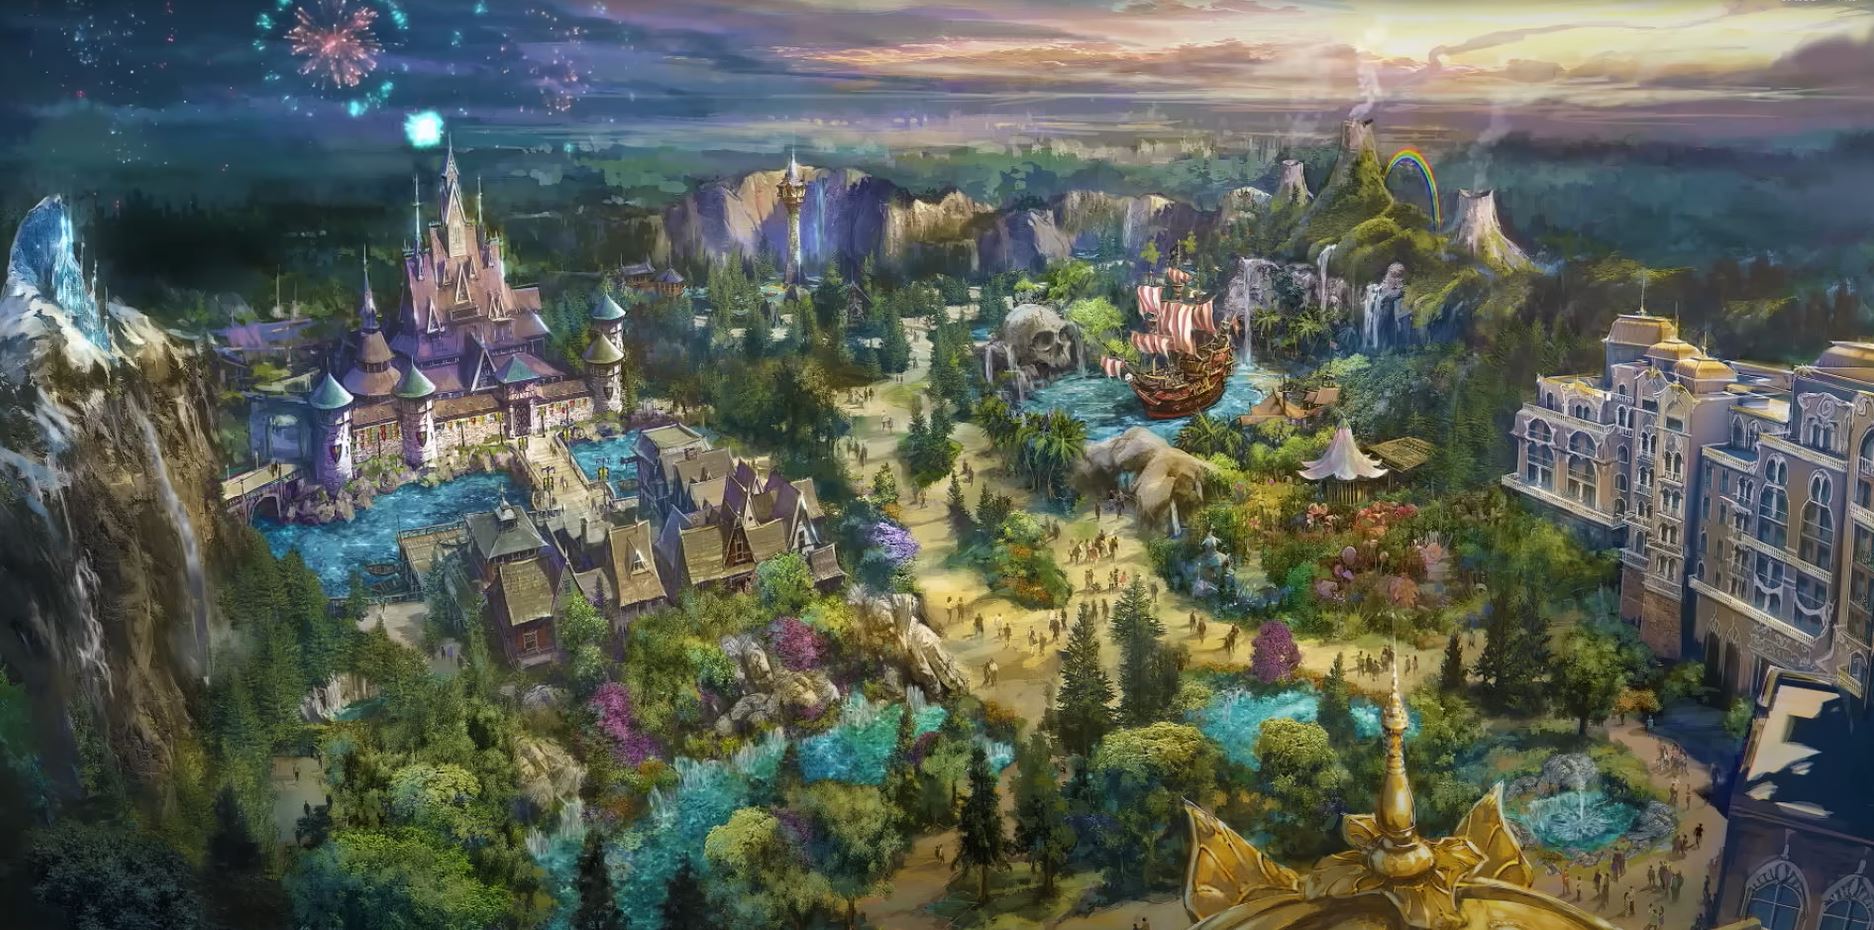 東京迪士尼海洋2024年預計開放新園區「Fantasy Springs 魔法之泉」!